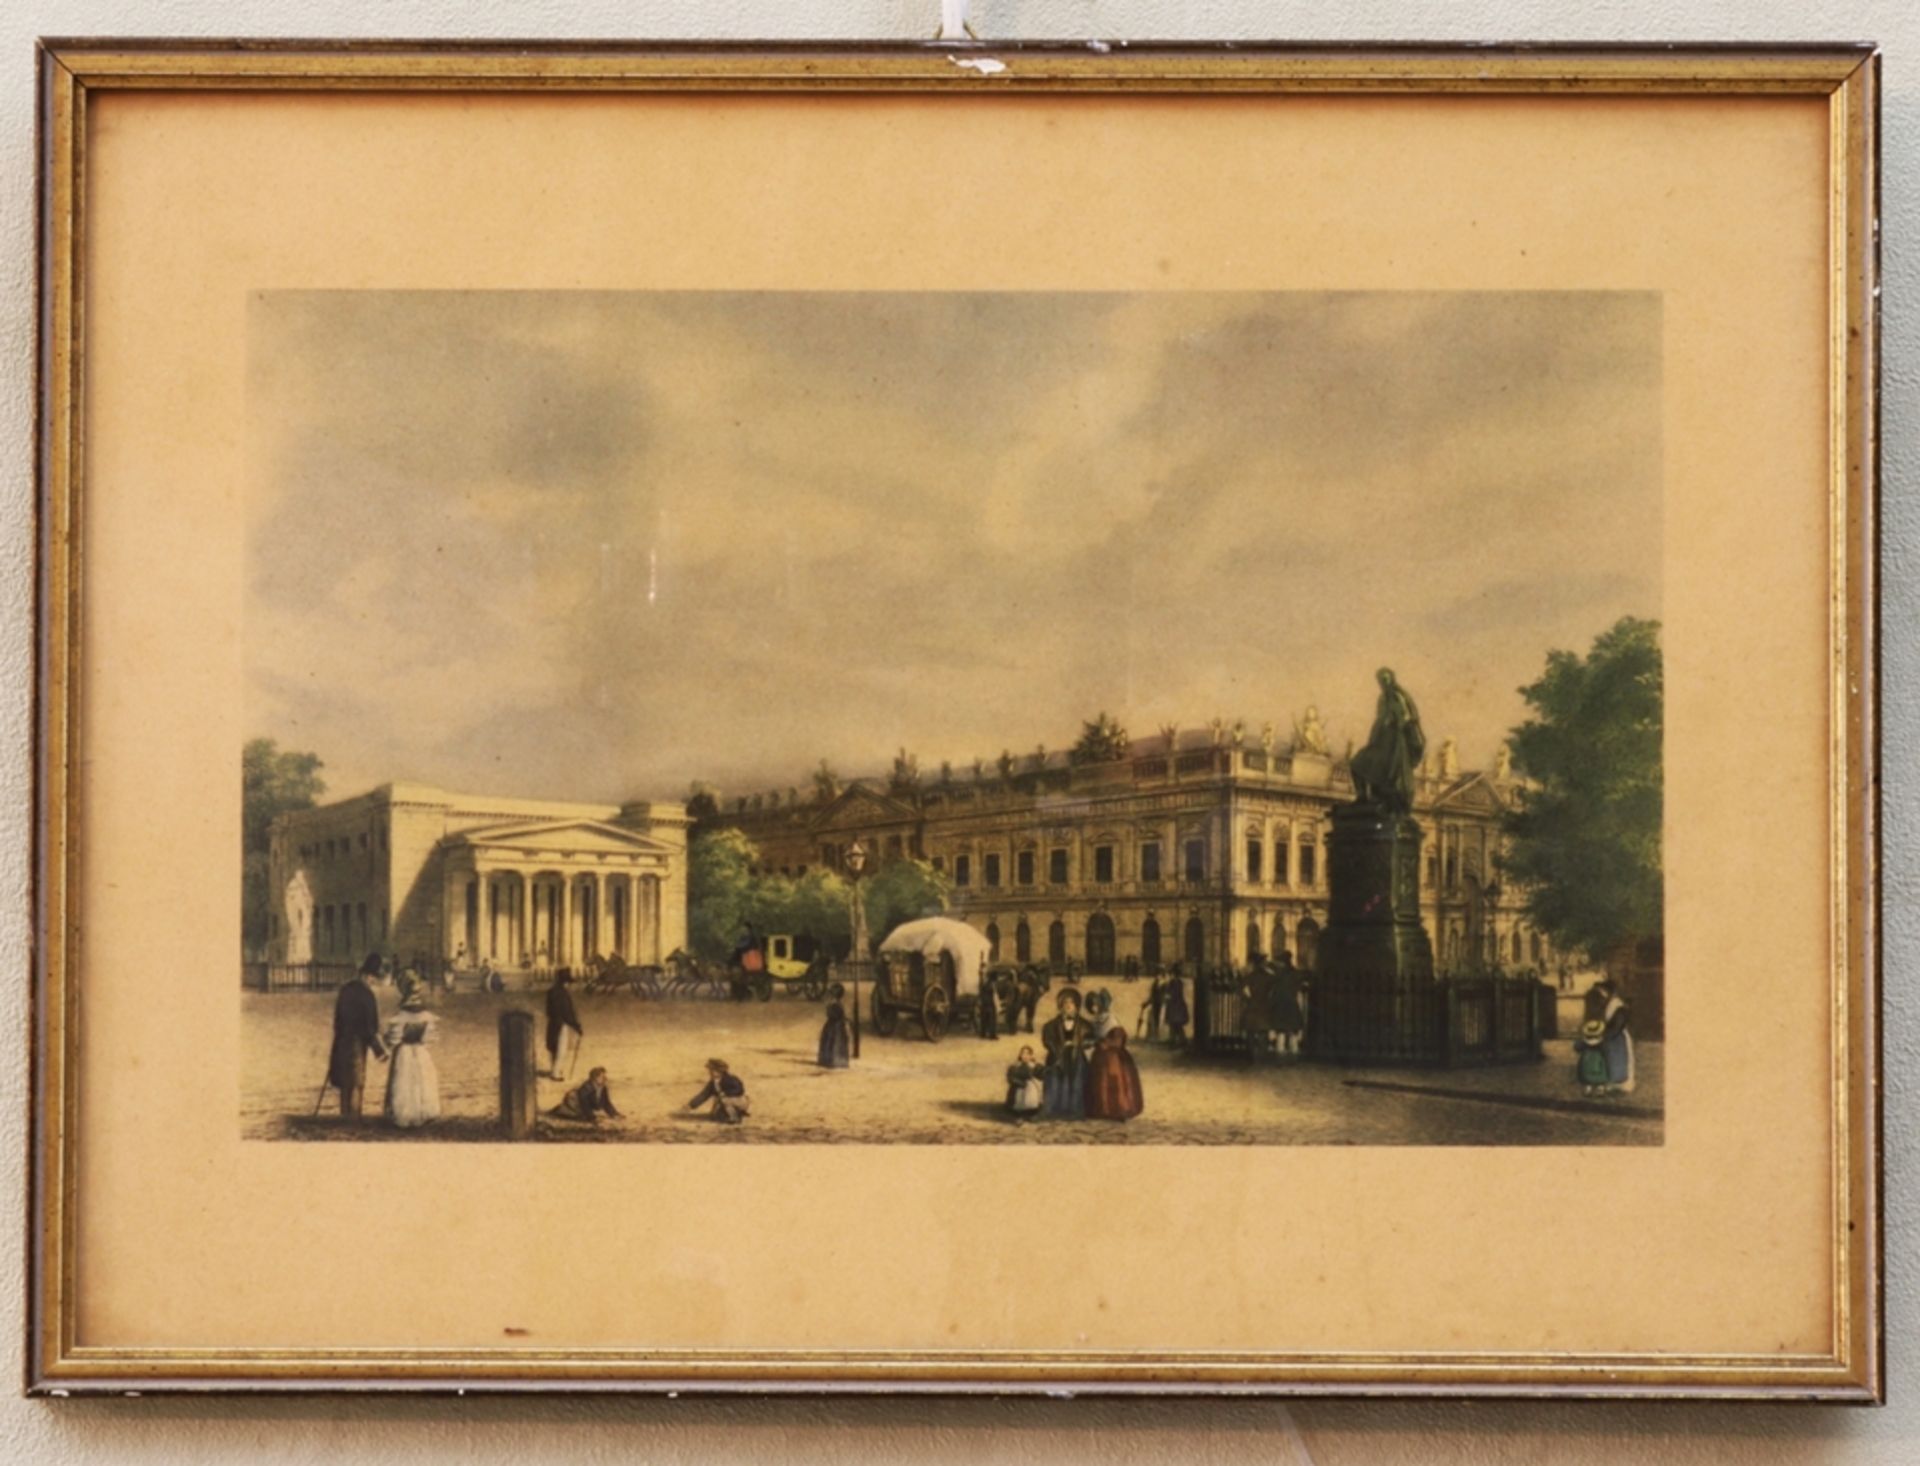 Farblithografie, Neue Wache/Ehrenmal u. Zeughaus, Unter den Linden um 1830, Anfang des 20.Jh.